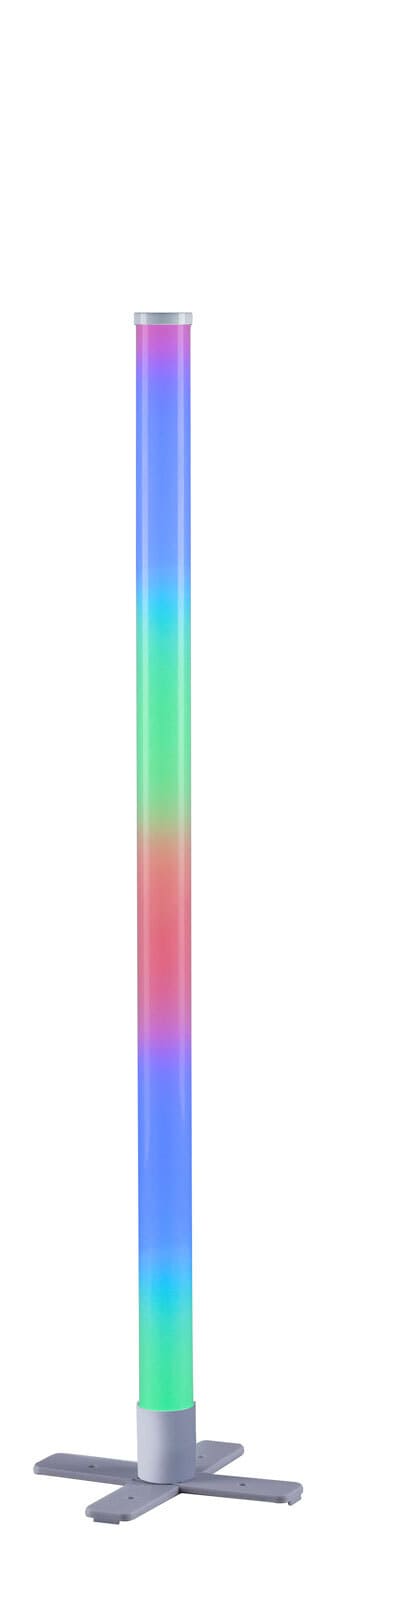 JUST LIGHT LED Stehlampe RINGO Rainbow 100 cm stahlfarbig